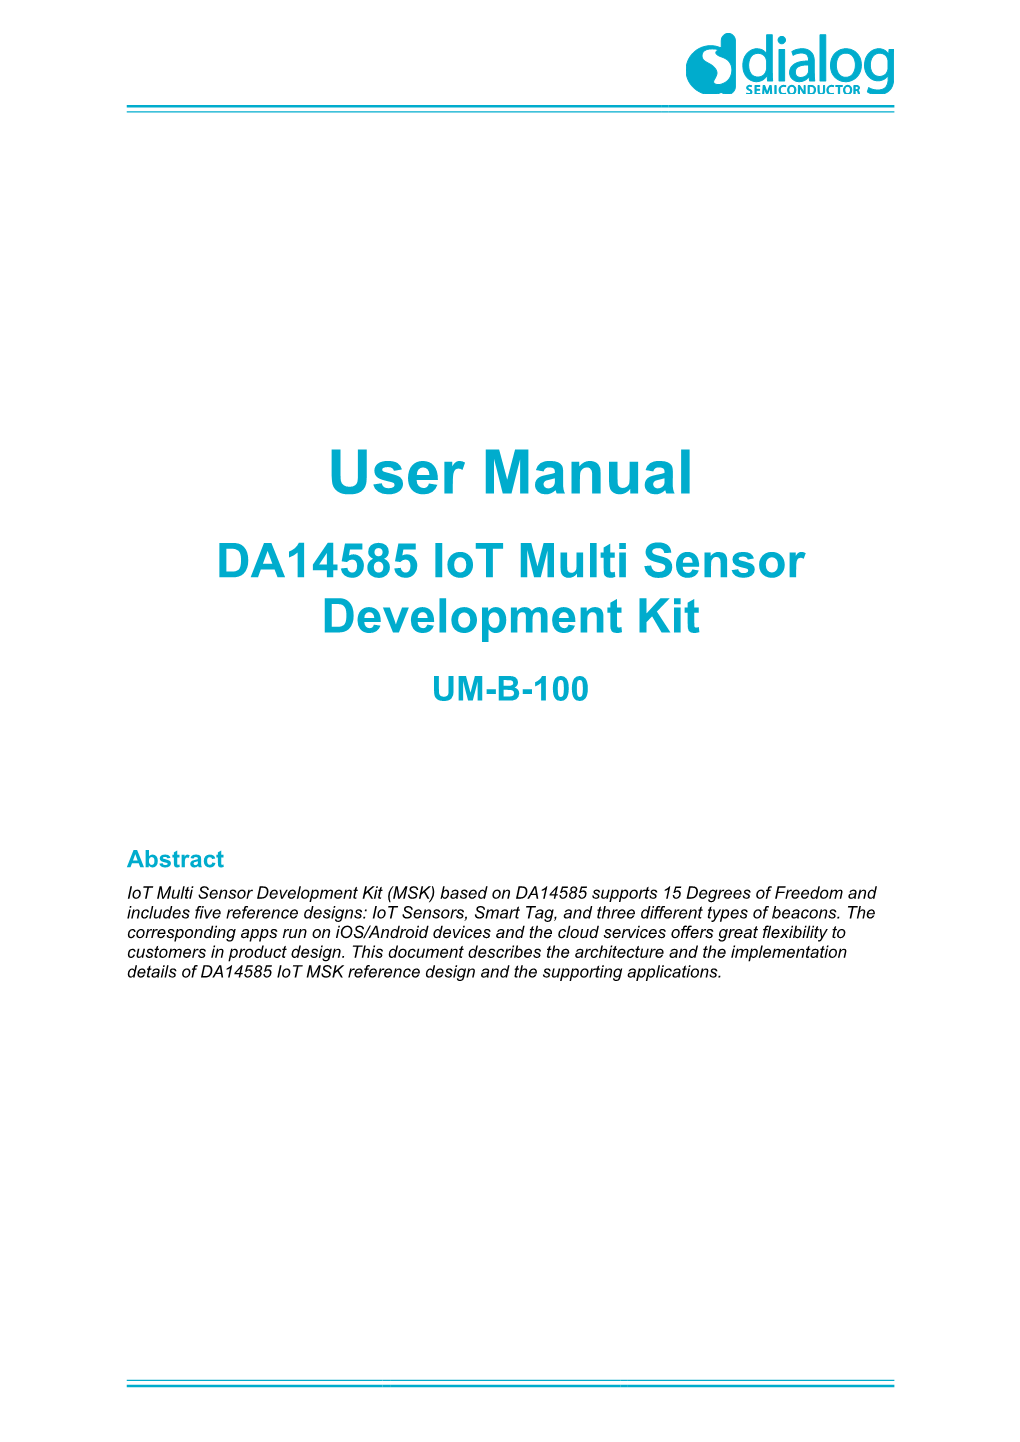 DA14585 Iot Multi Sensor Development Kit UM-B-100